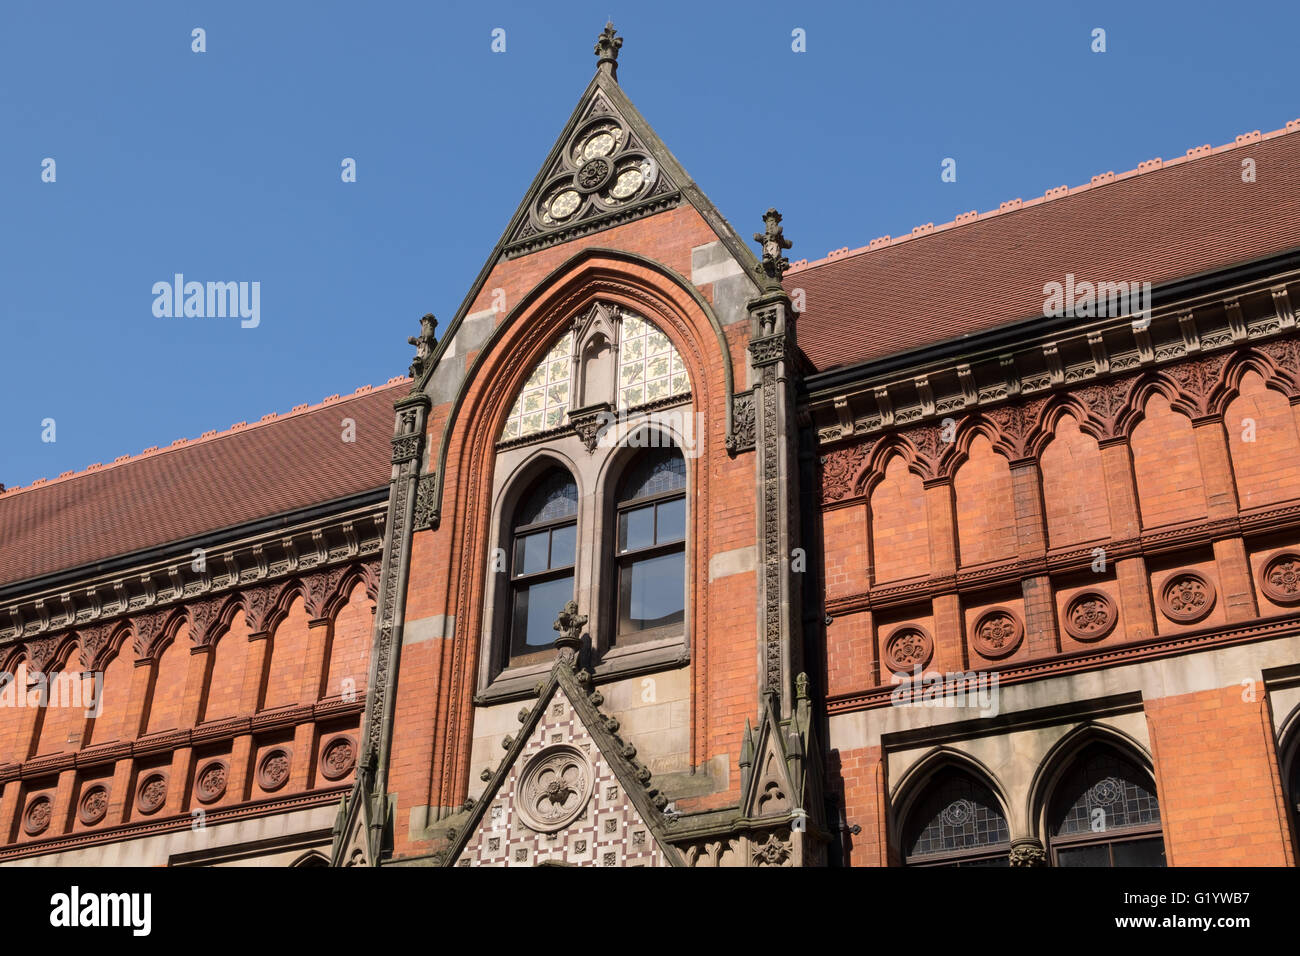 Dettaglio di stile gotico veneziano di Birmingham School of Art, REGNO UNITO Foto Stock